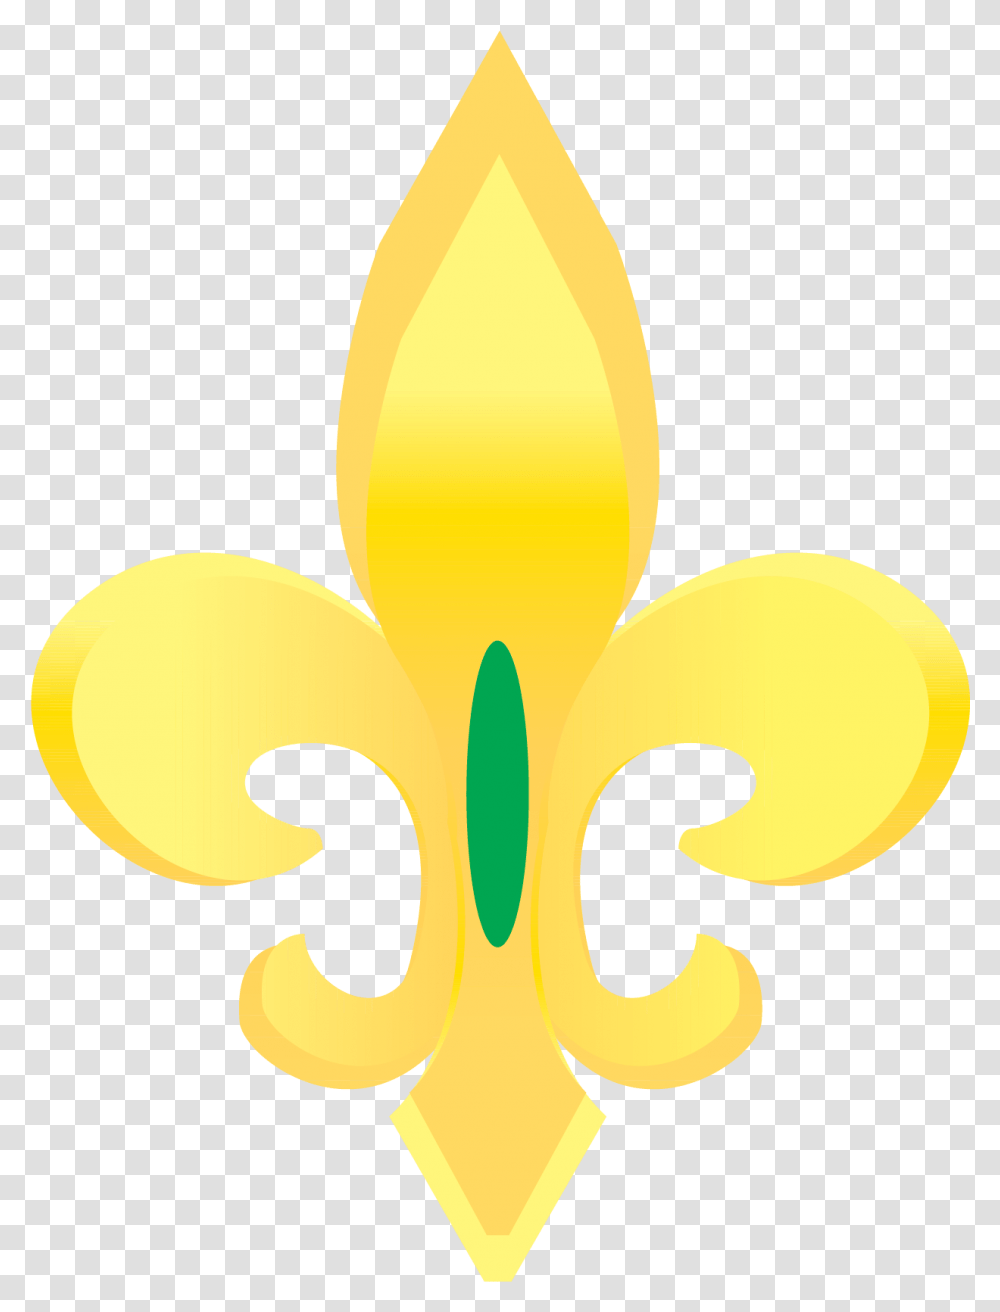 Gold Fleur De Lis Vector Clip Art Fleur De Lis Gold, Fire, Flame Transparent Png